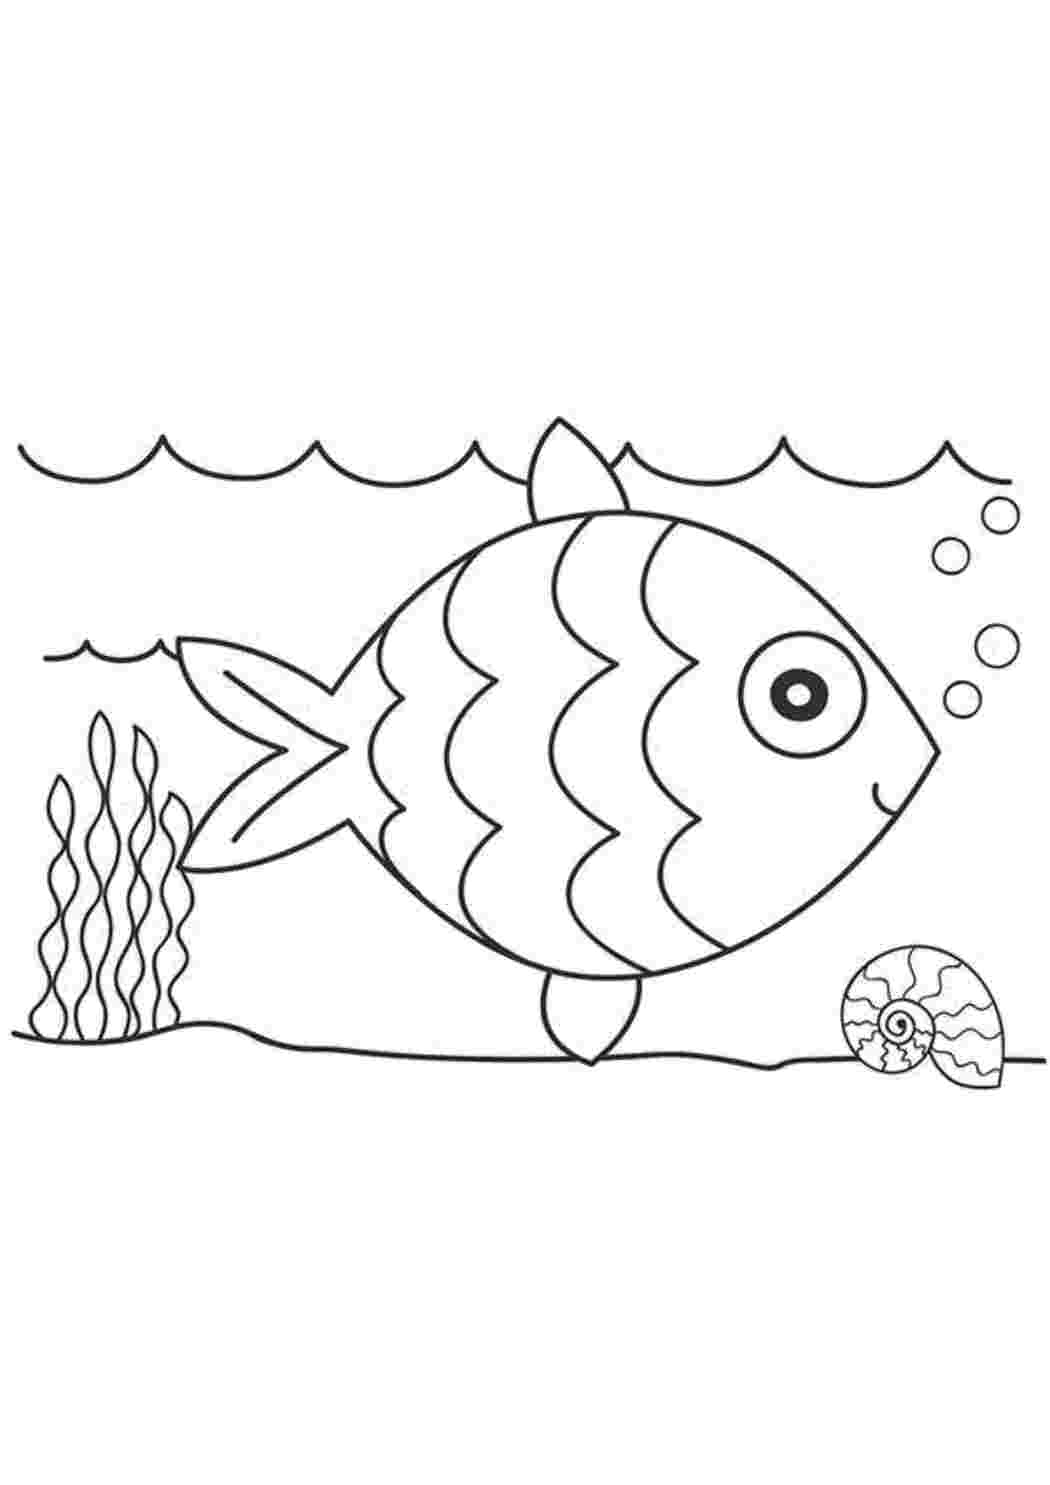 Как нарисовать рыбу ежа на бумаге карандашом поэтапно